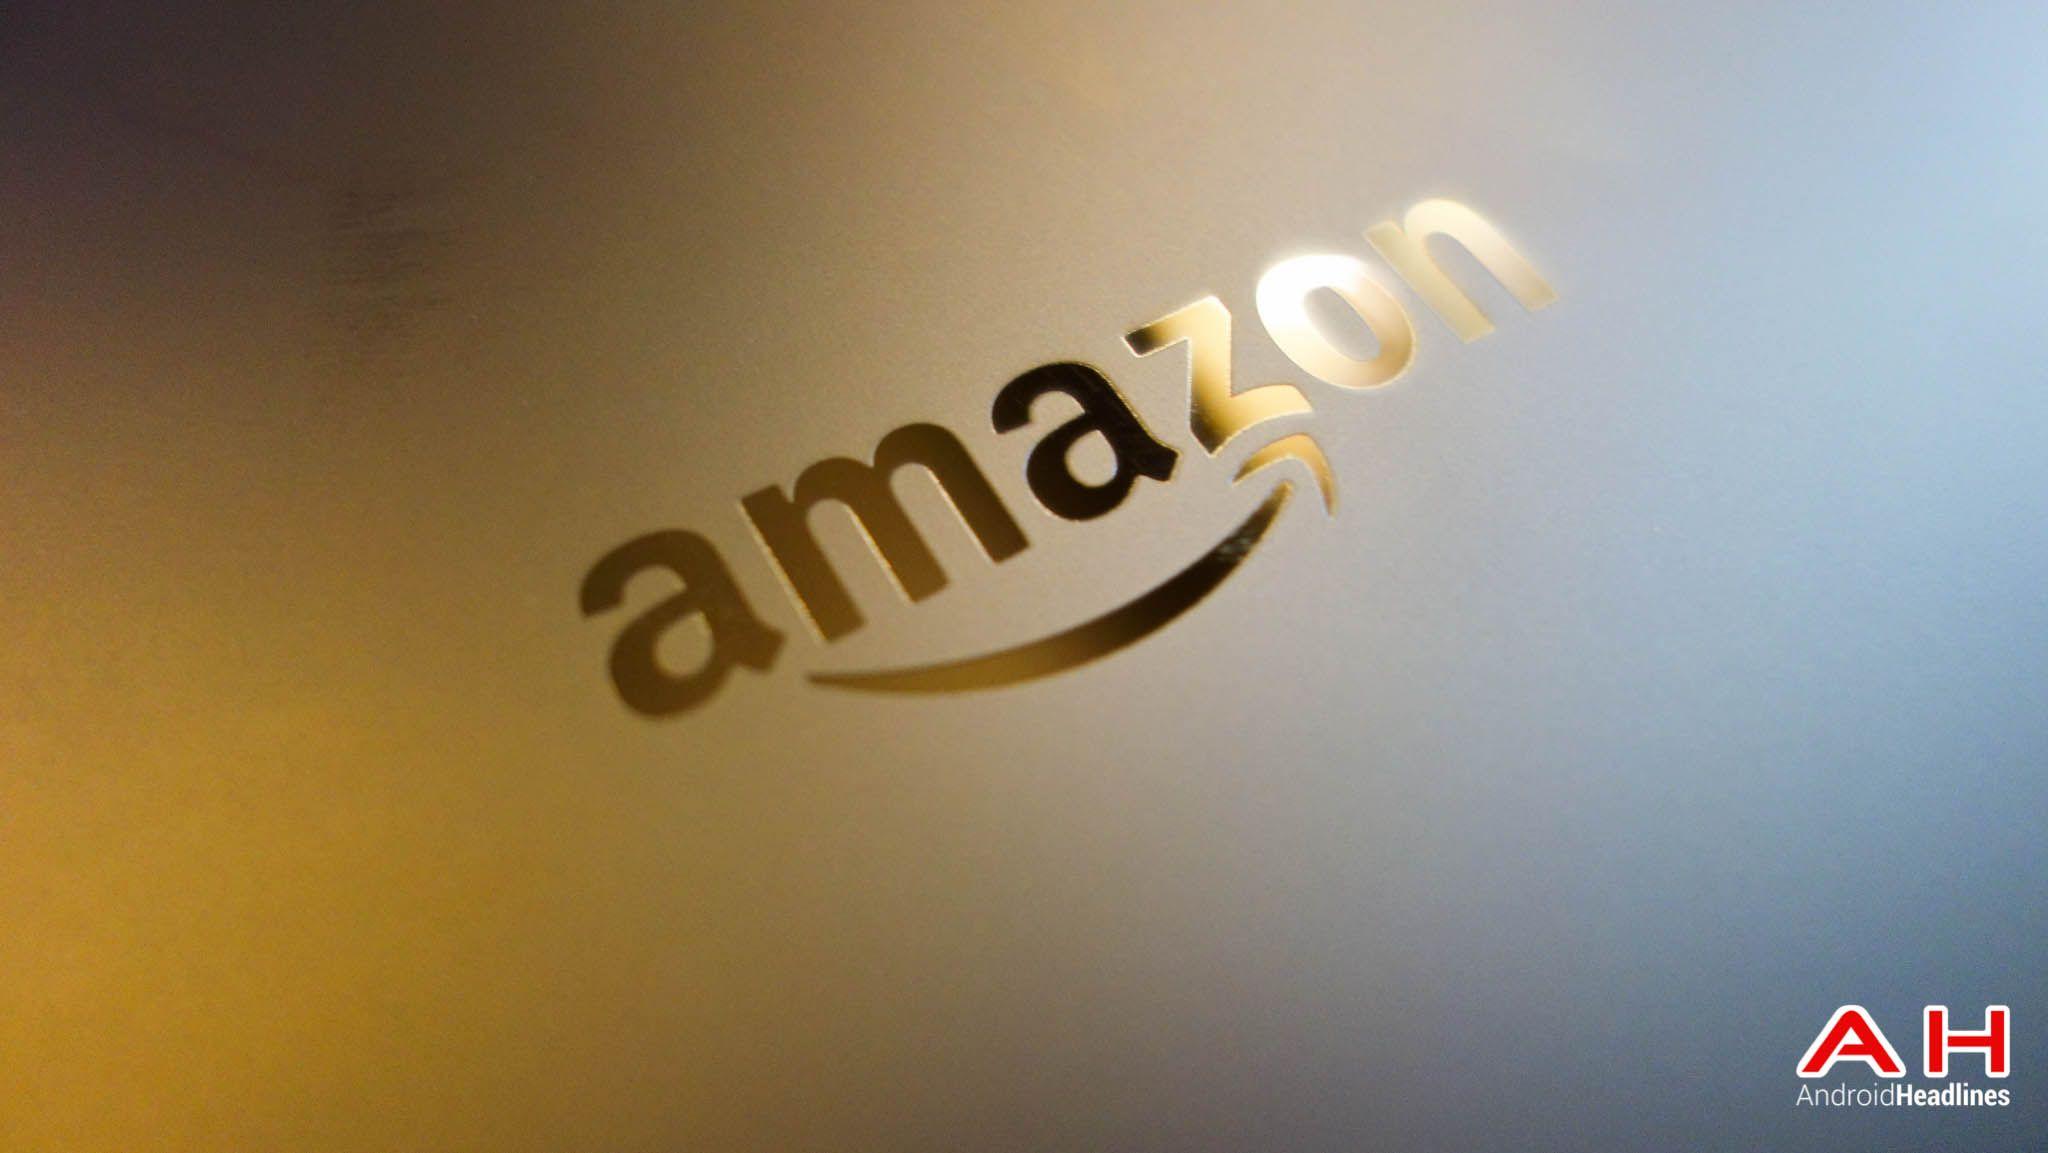 Cool Amazon Logo - Amazon Add #AmazonWishCart To Their Twitter Easy-Buy Service ...